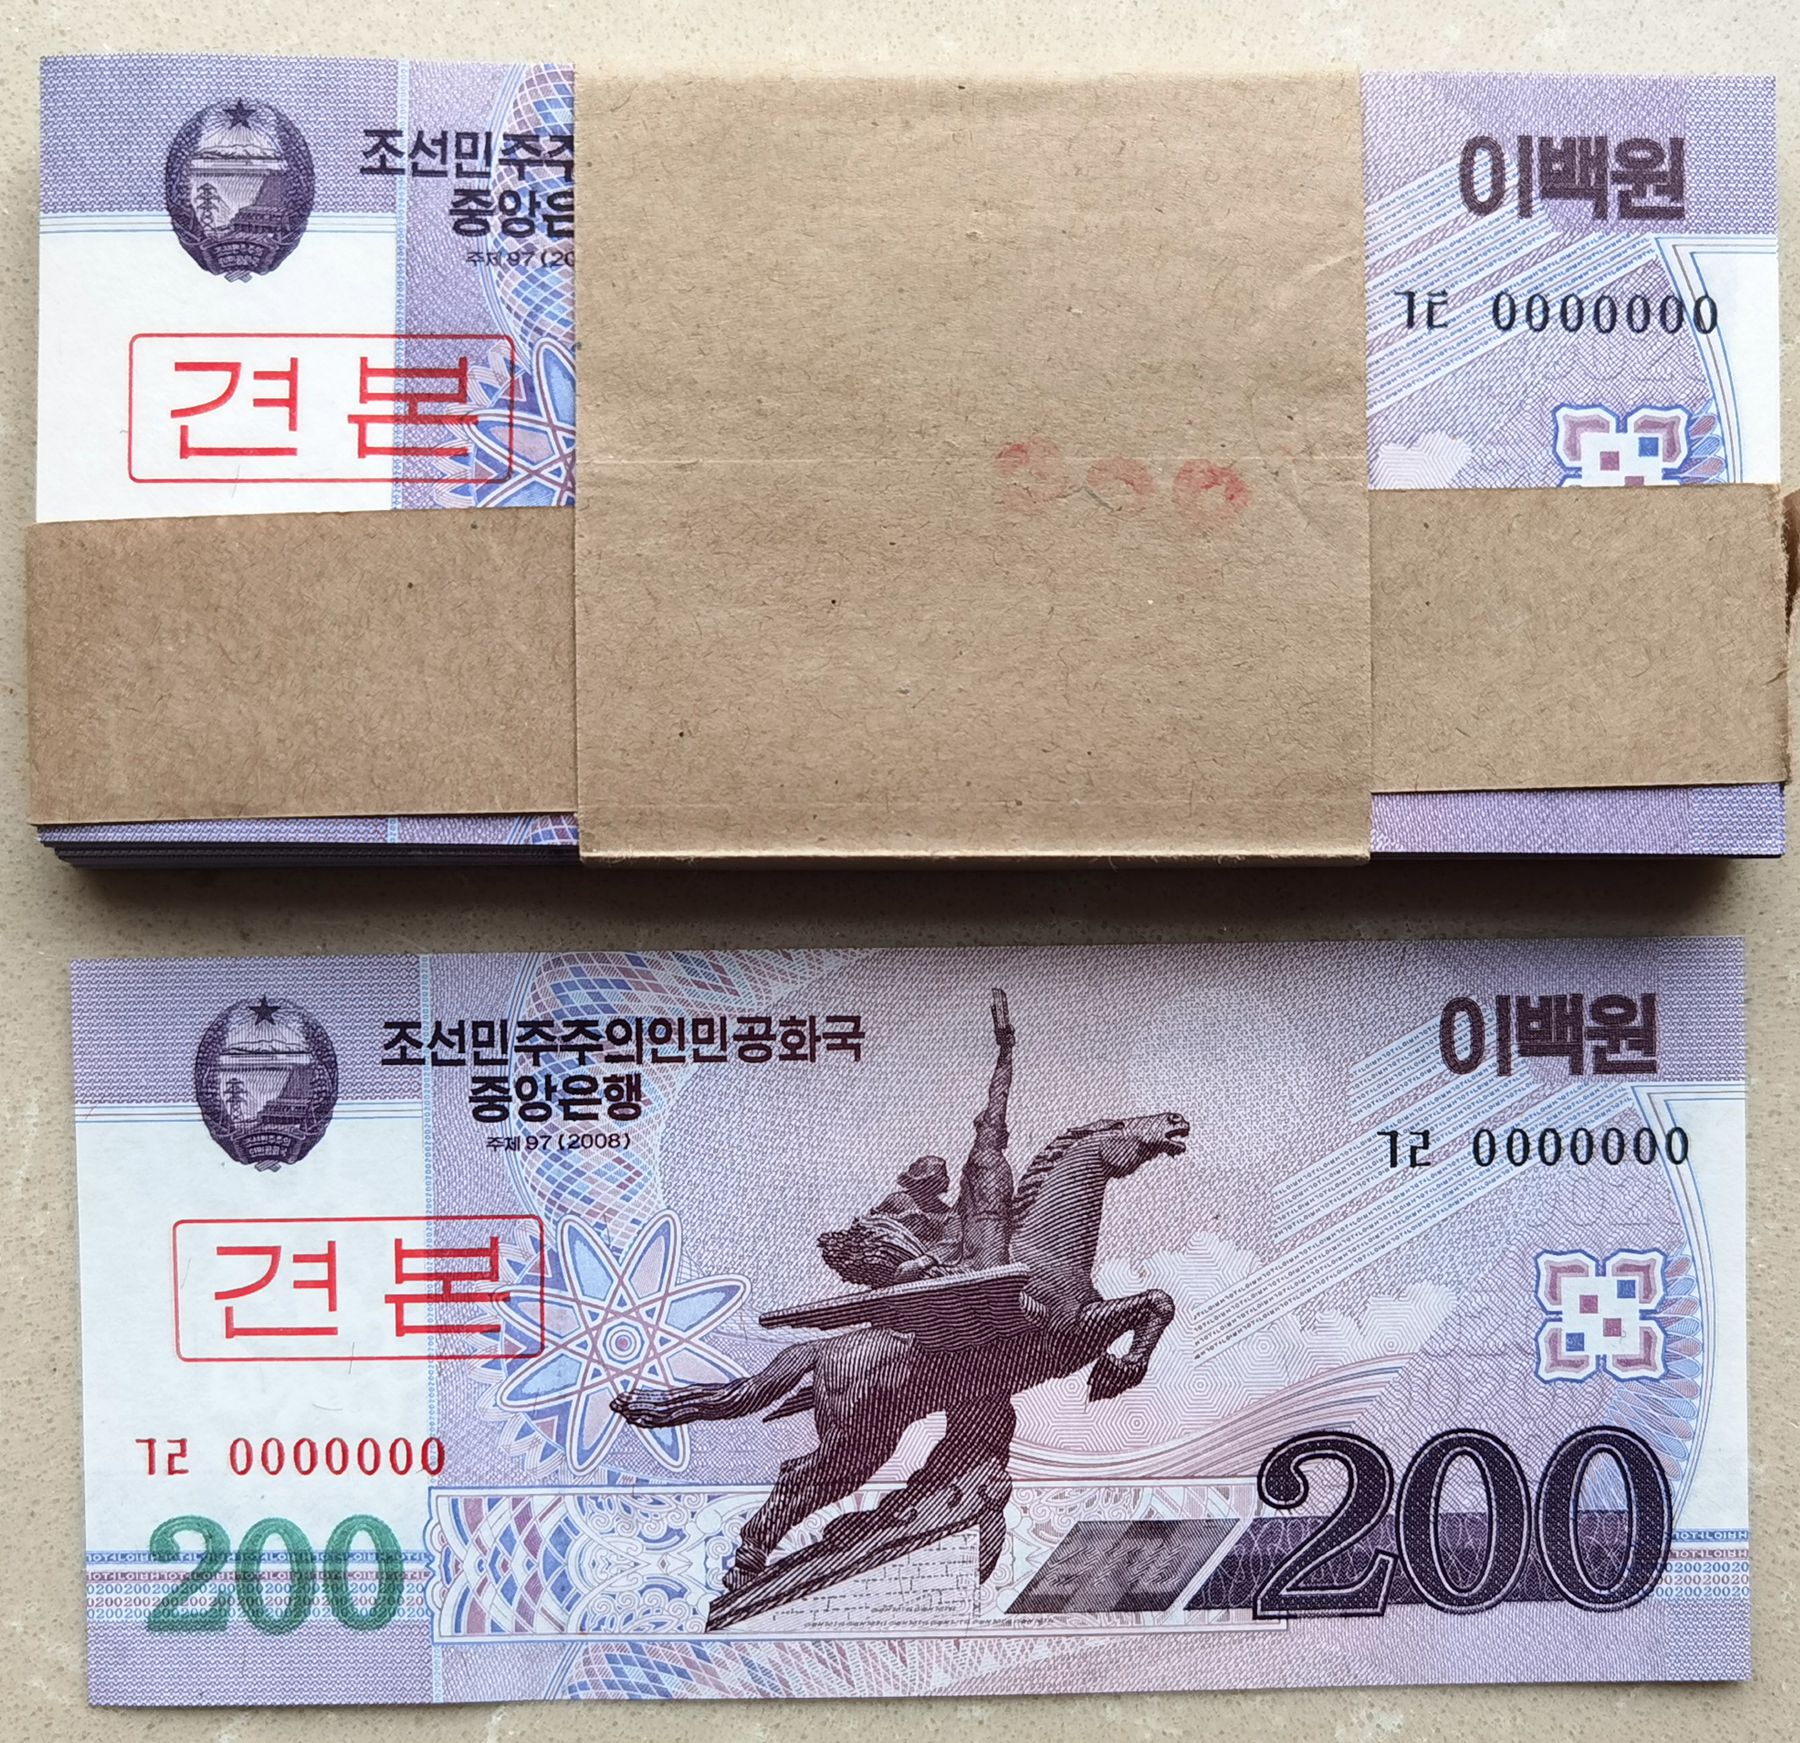 L1321, Bundle 100 Pcs, S Korea 2008 Specimen 200 Won Banknote, Series 0000000